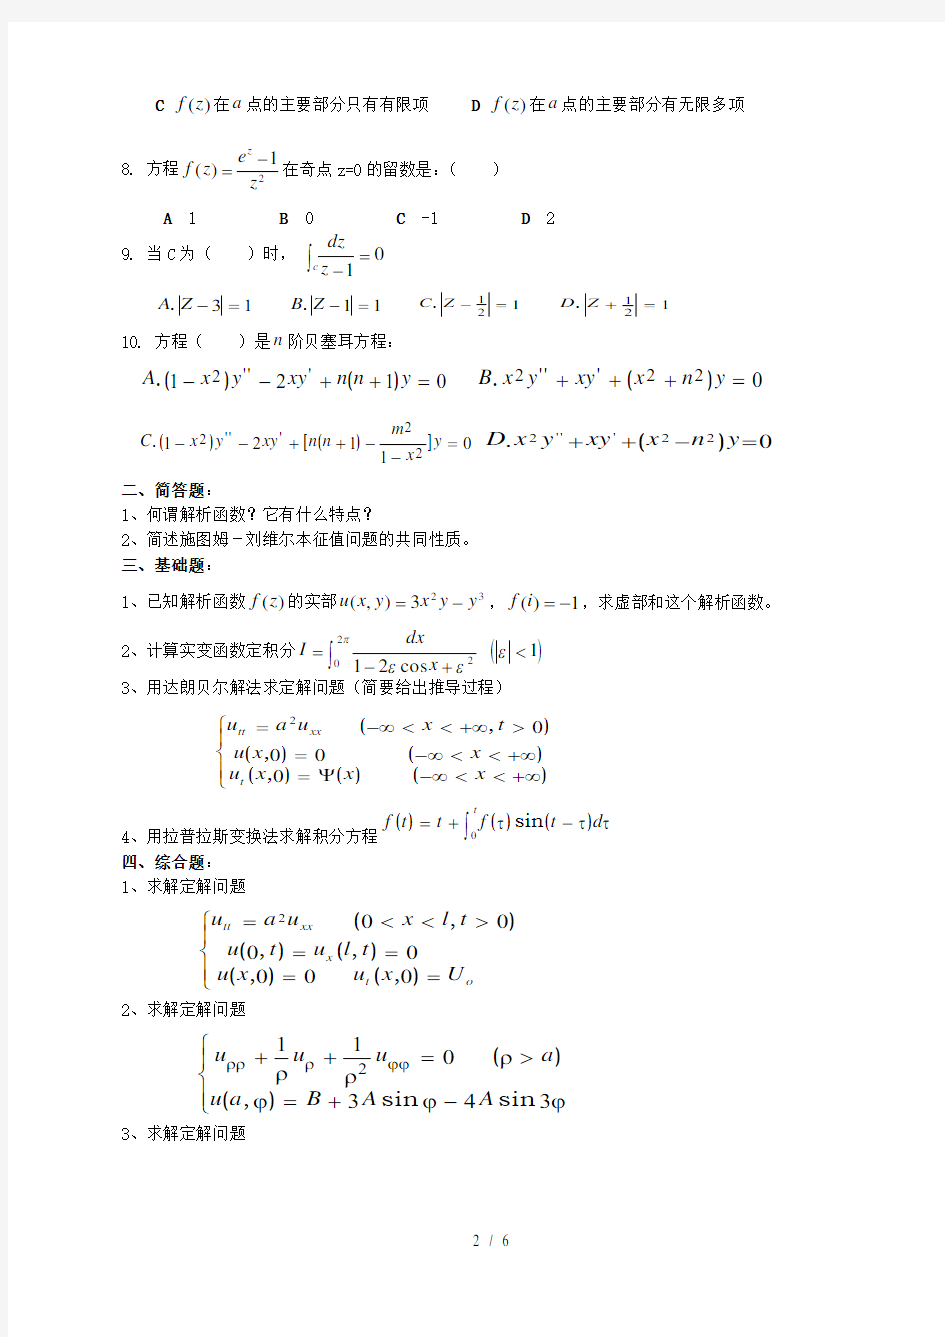 数学物理方法复习资料及参考答案(二)